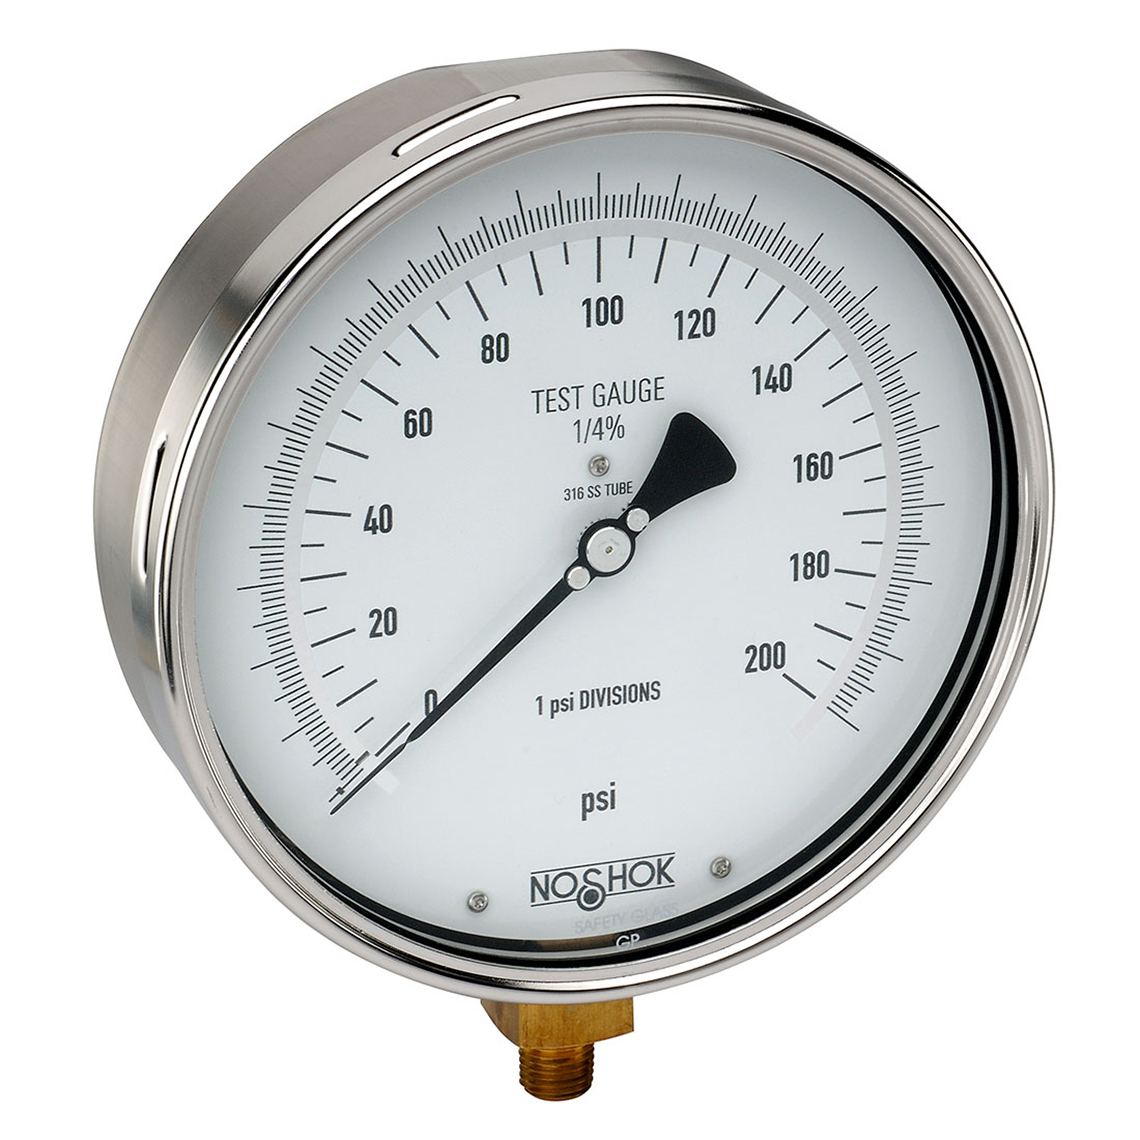 60-800-30-psi 800 Series Precision Test Pressure Gauges